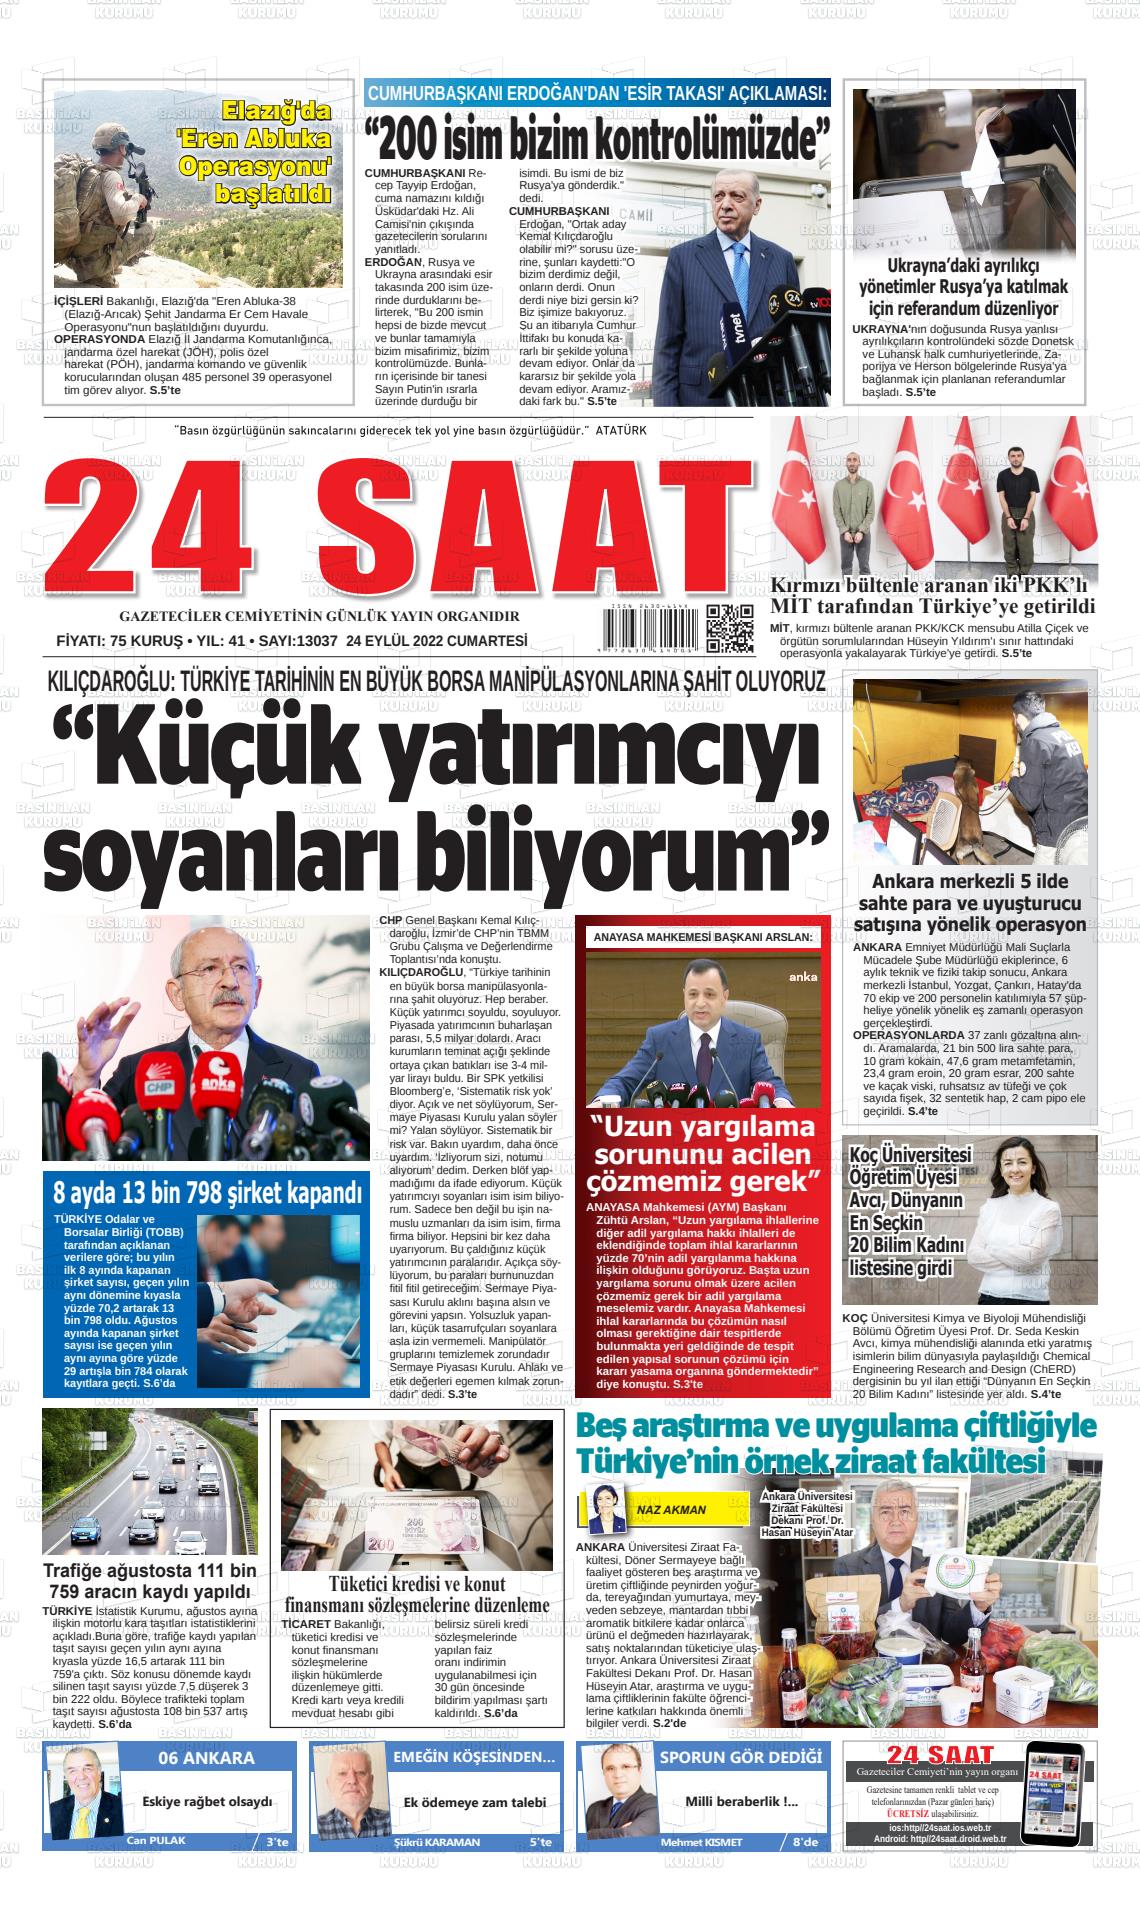 25 Eylül 2022 24 Saat Gazete Manşeti